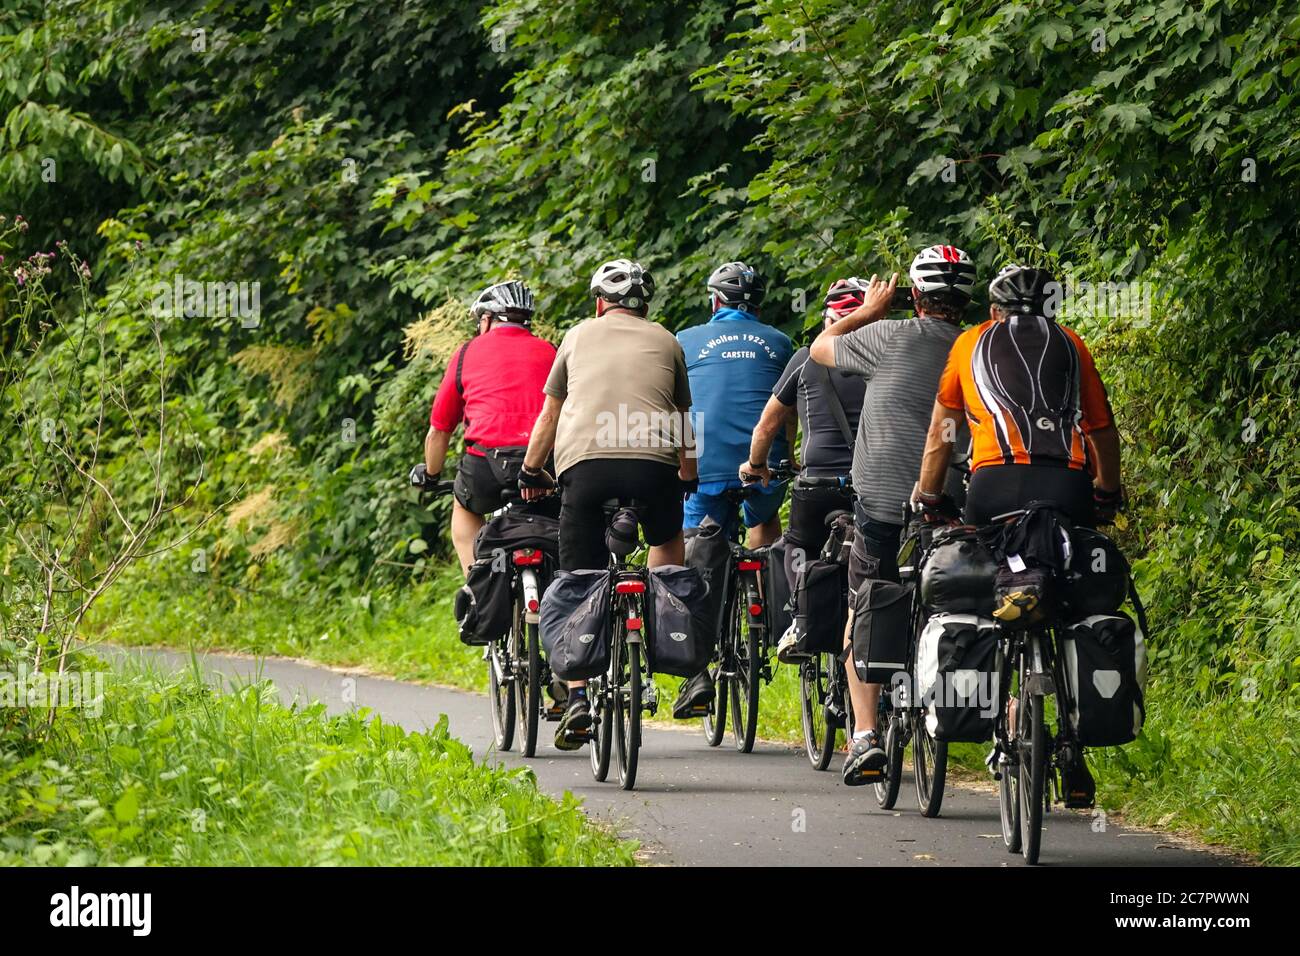 Groupe d'aînés vélo sur une piste cyclable dans la nature Saxe Elberadweg Allemagne moto arrière Banque D'Images